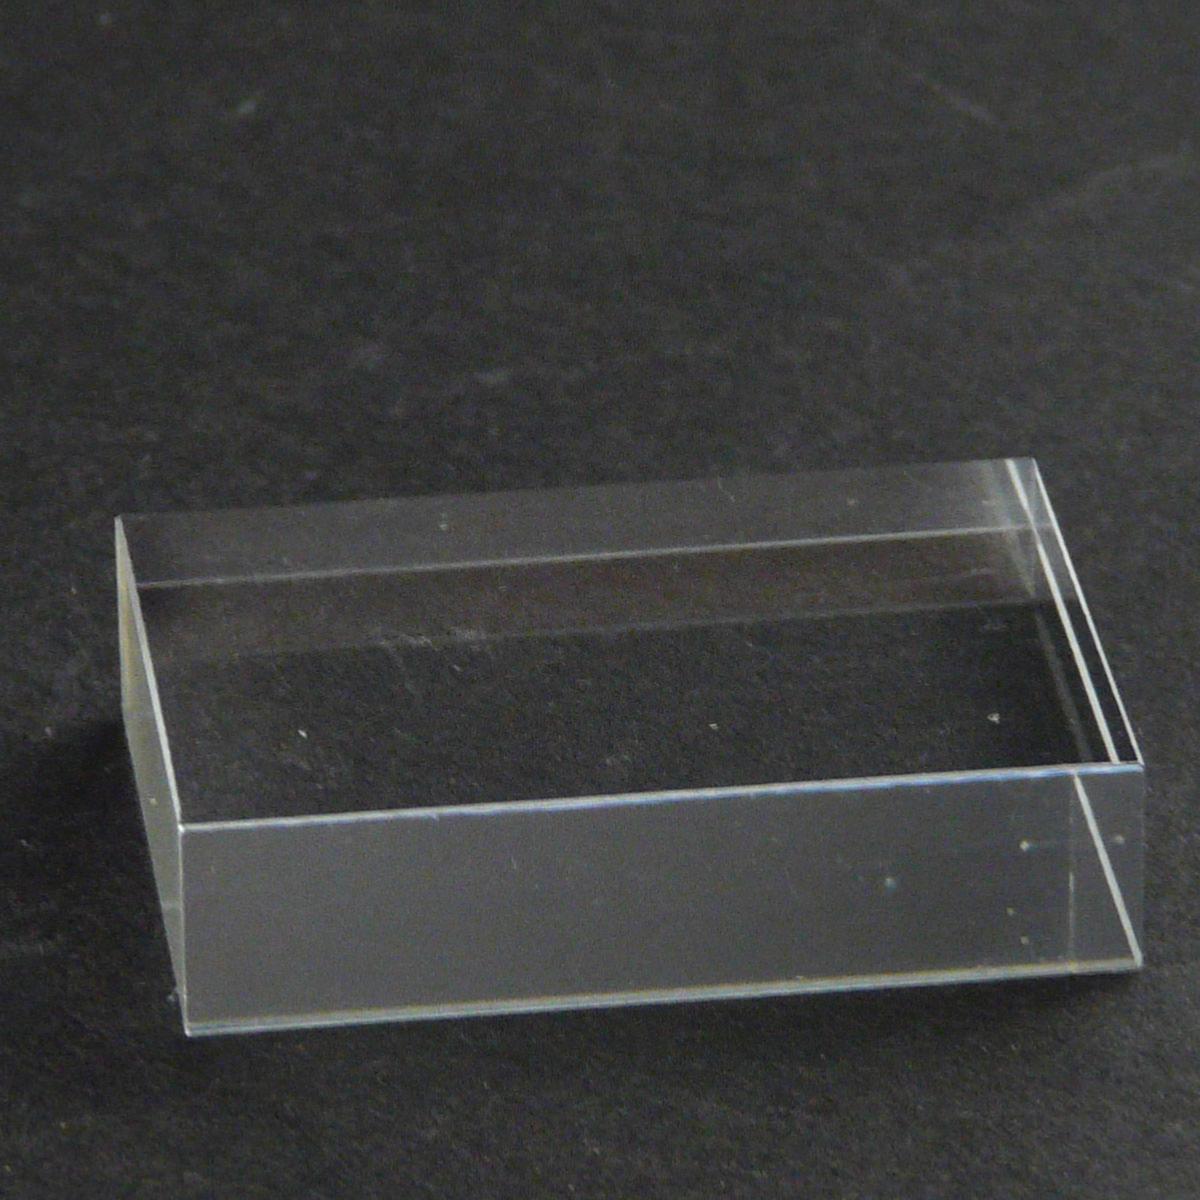 Présentoir Plaque acrylique 5x5x0,6cm. Socle de minéralogie pour minéraux.